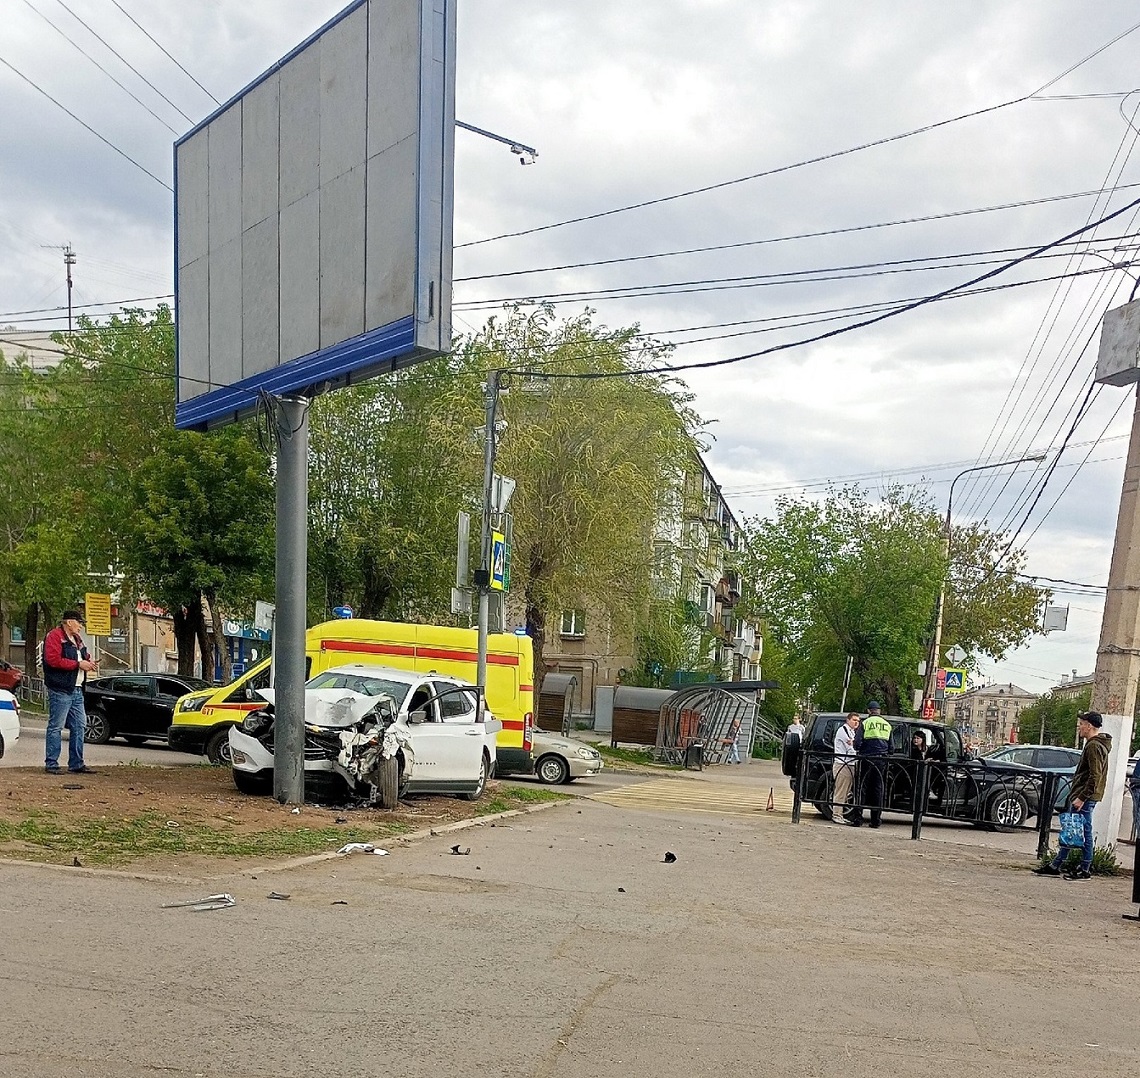 Автомобиль разбился о рекламный щит в Магнитогорске